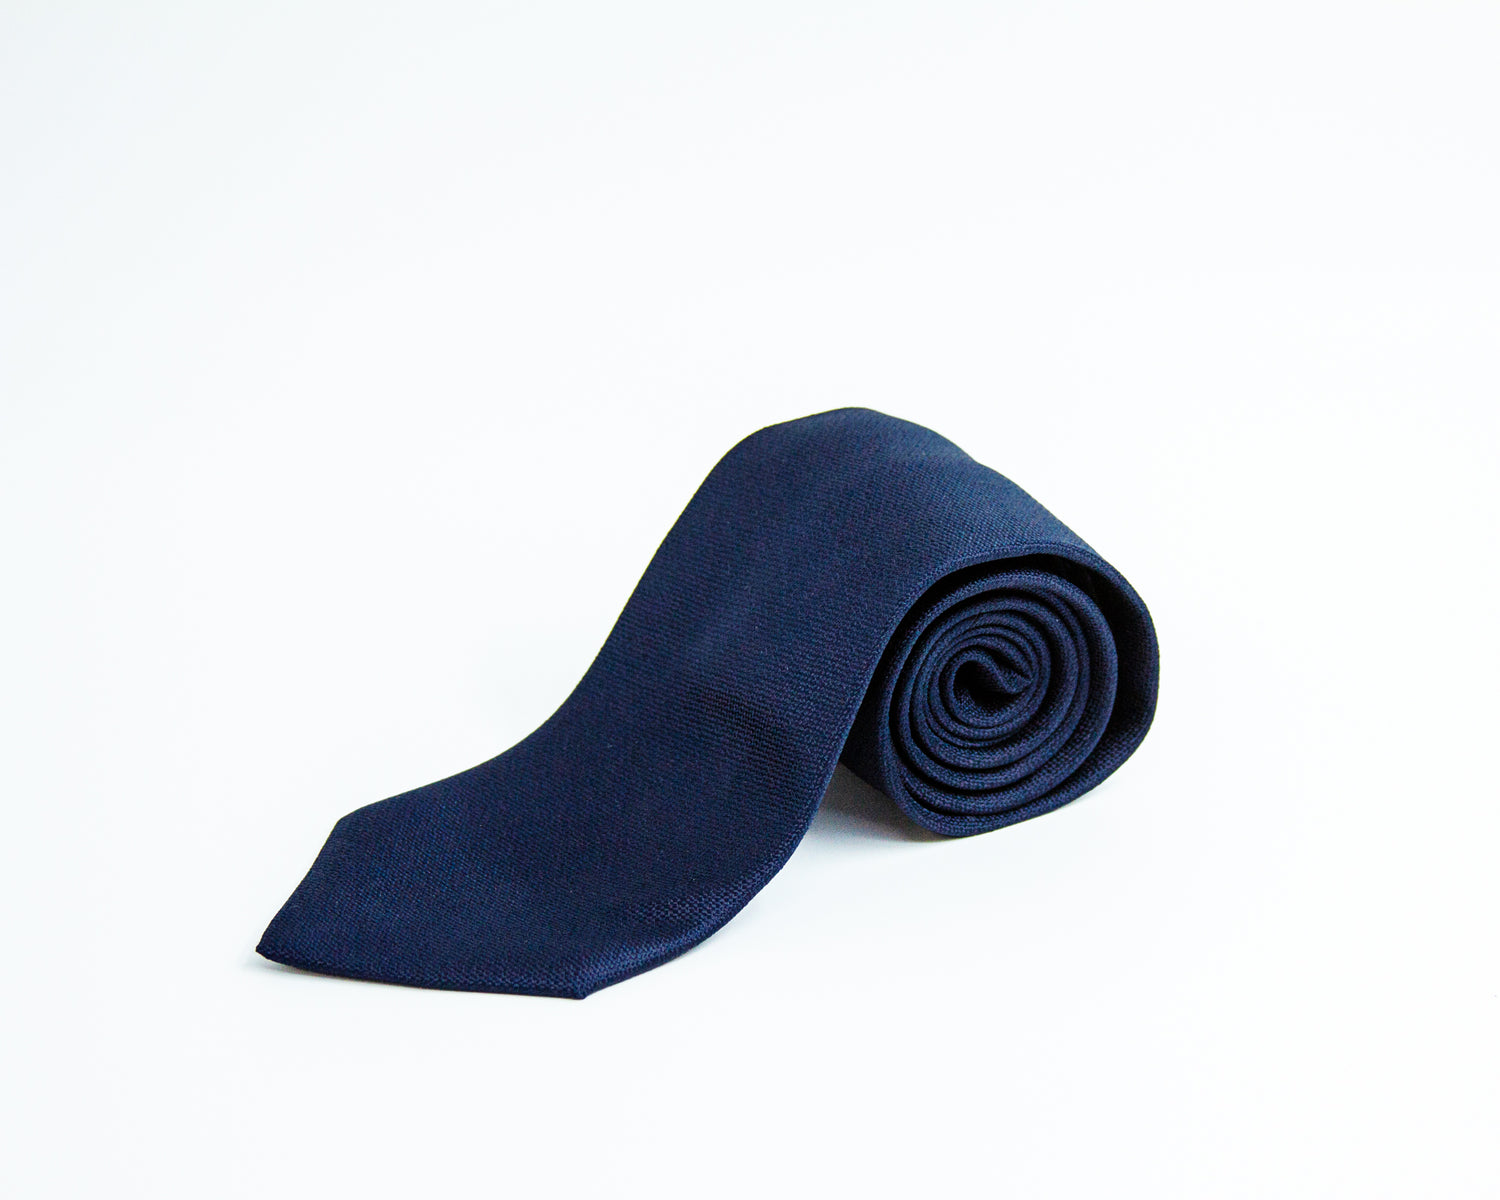 Turo Fine Grenadine Silk Tie in Navy Blue (8402356633930)